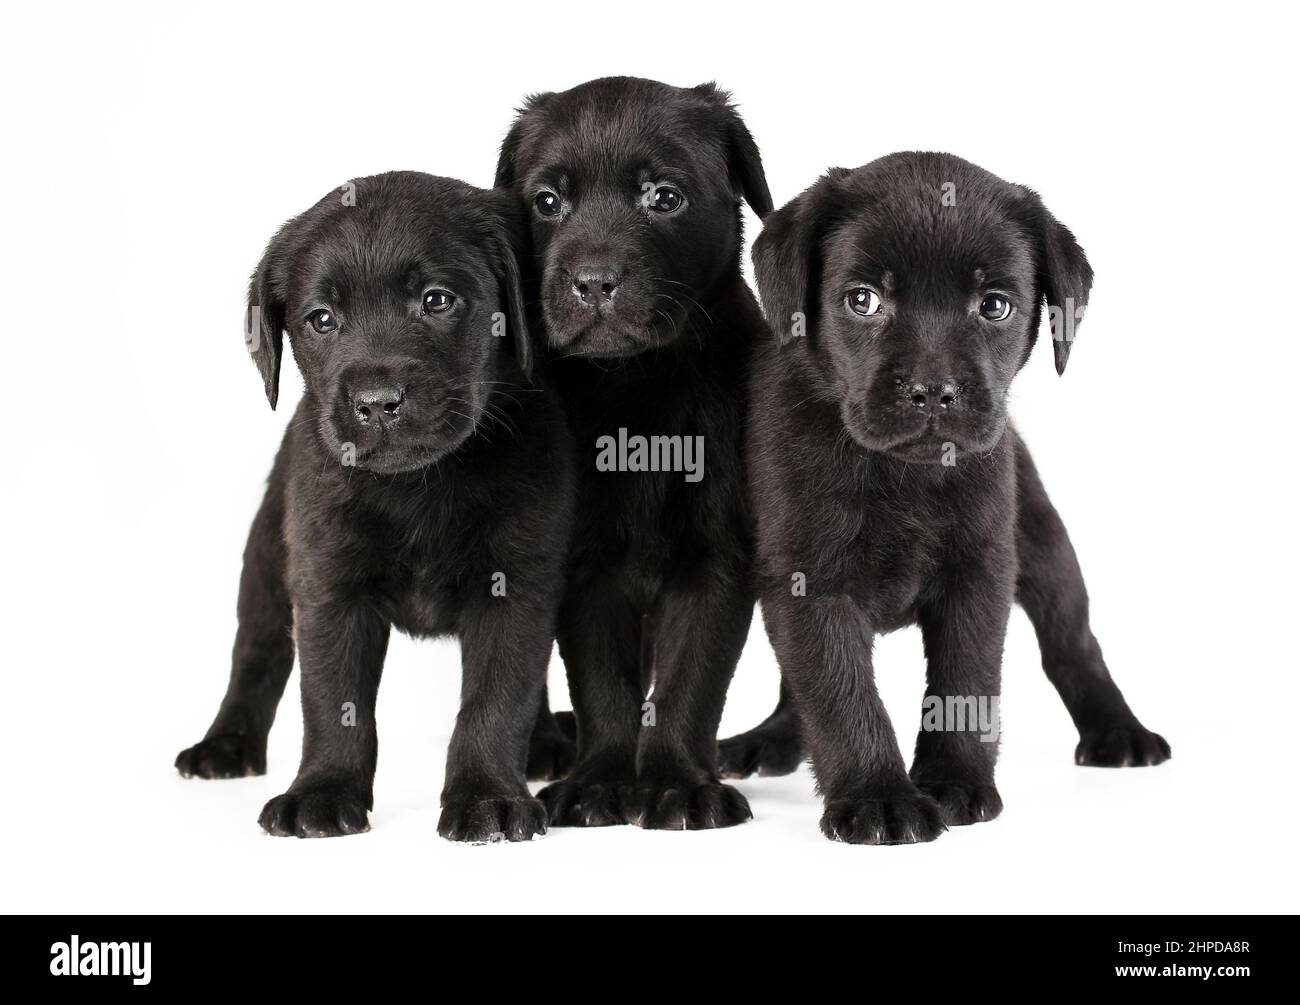 Trois petits chiots noirs de labrador Retriever se reproduisent isolés sur fond blanc Banque D'Images